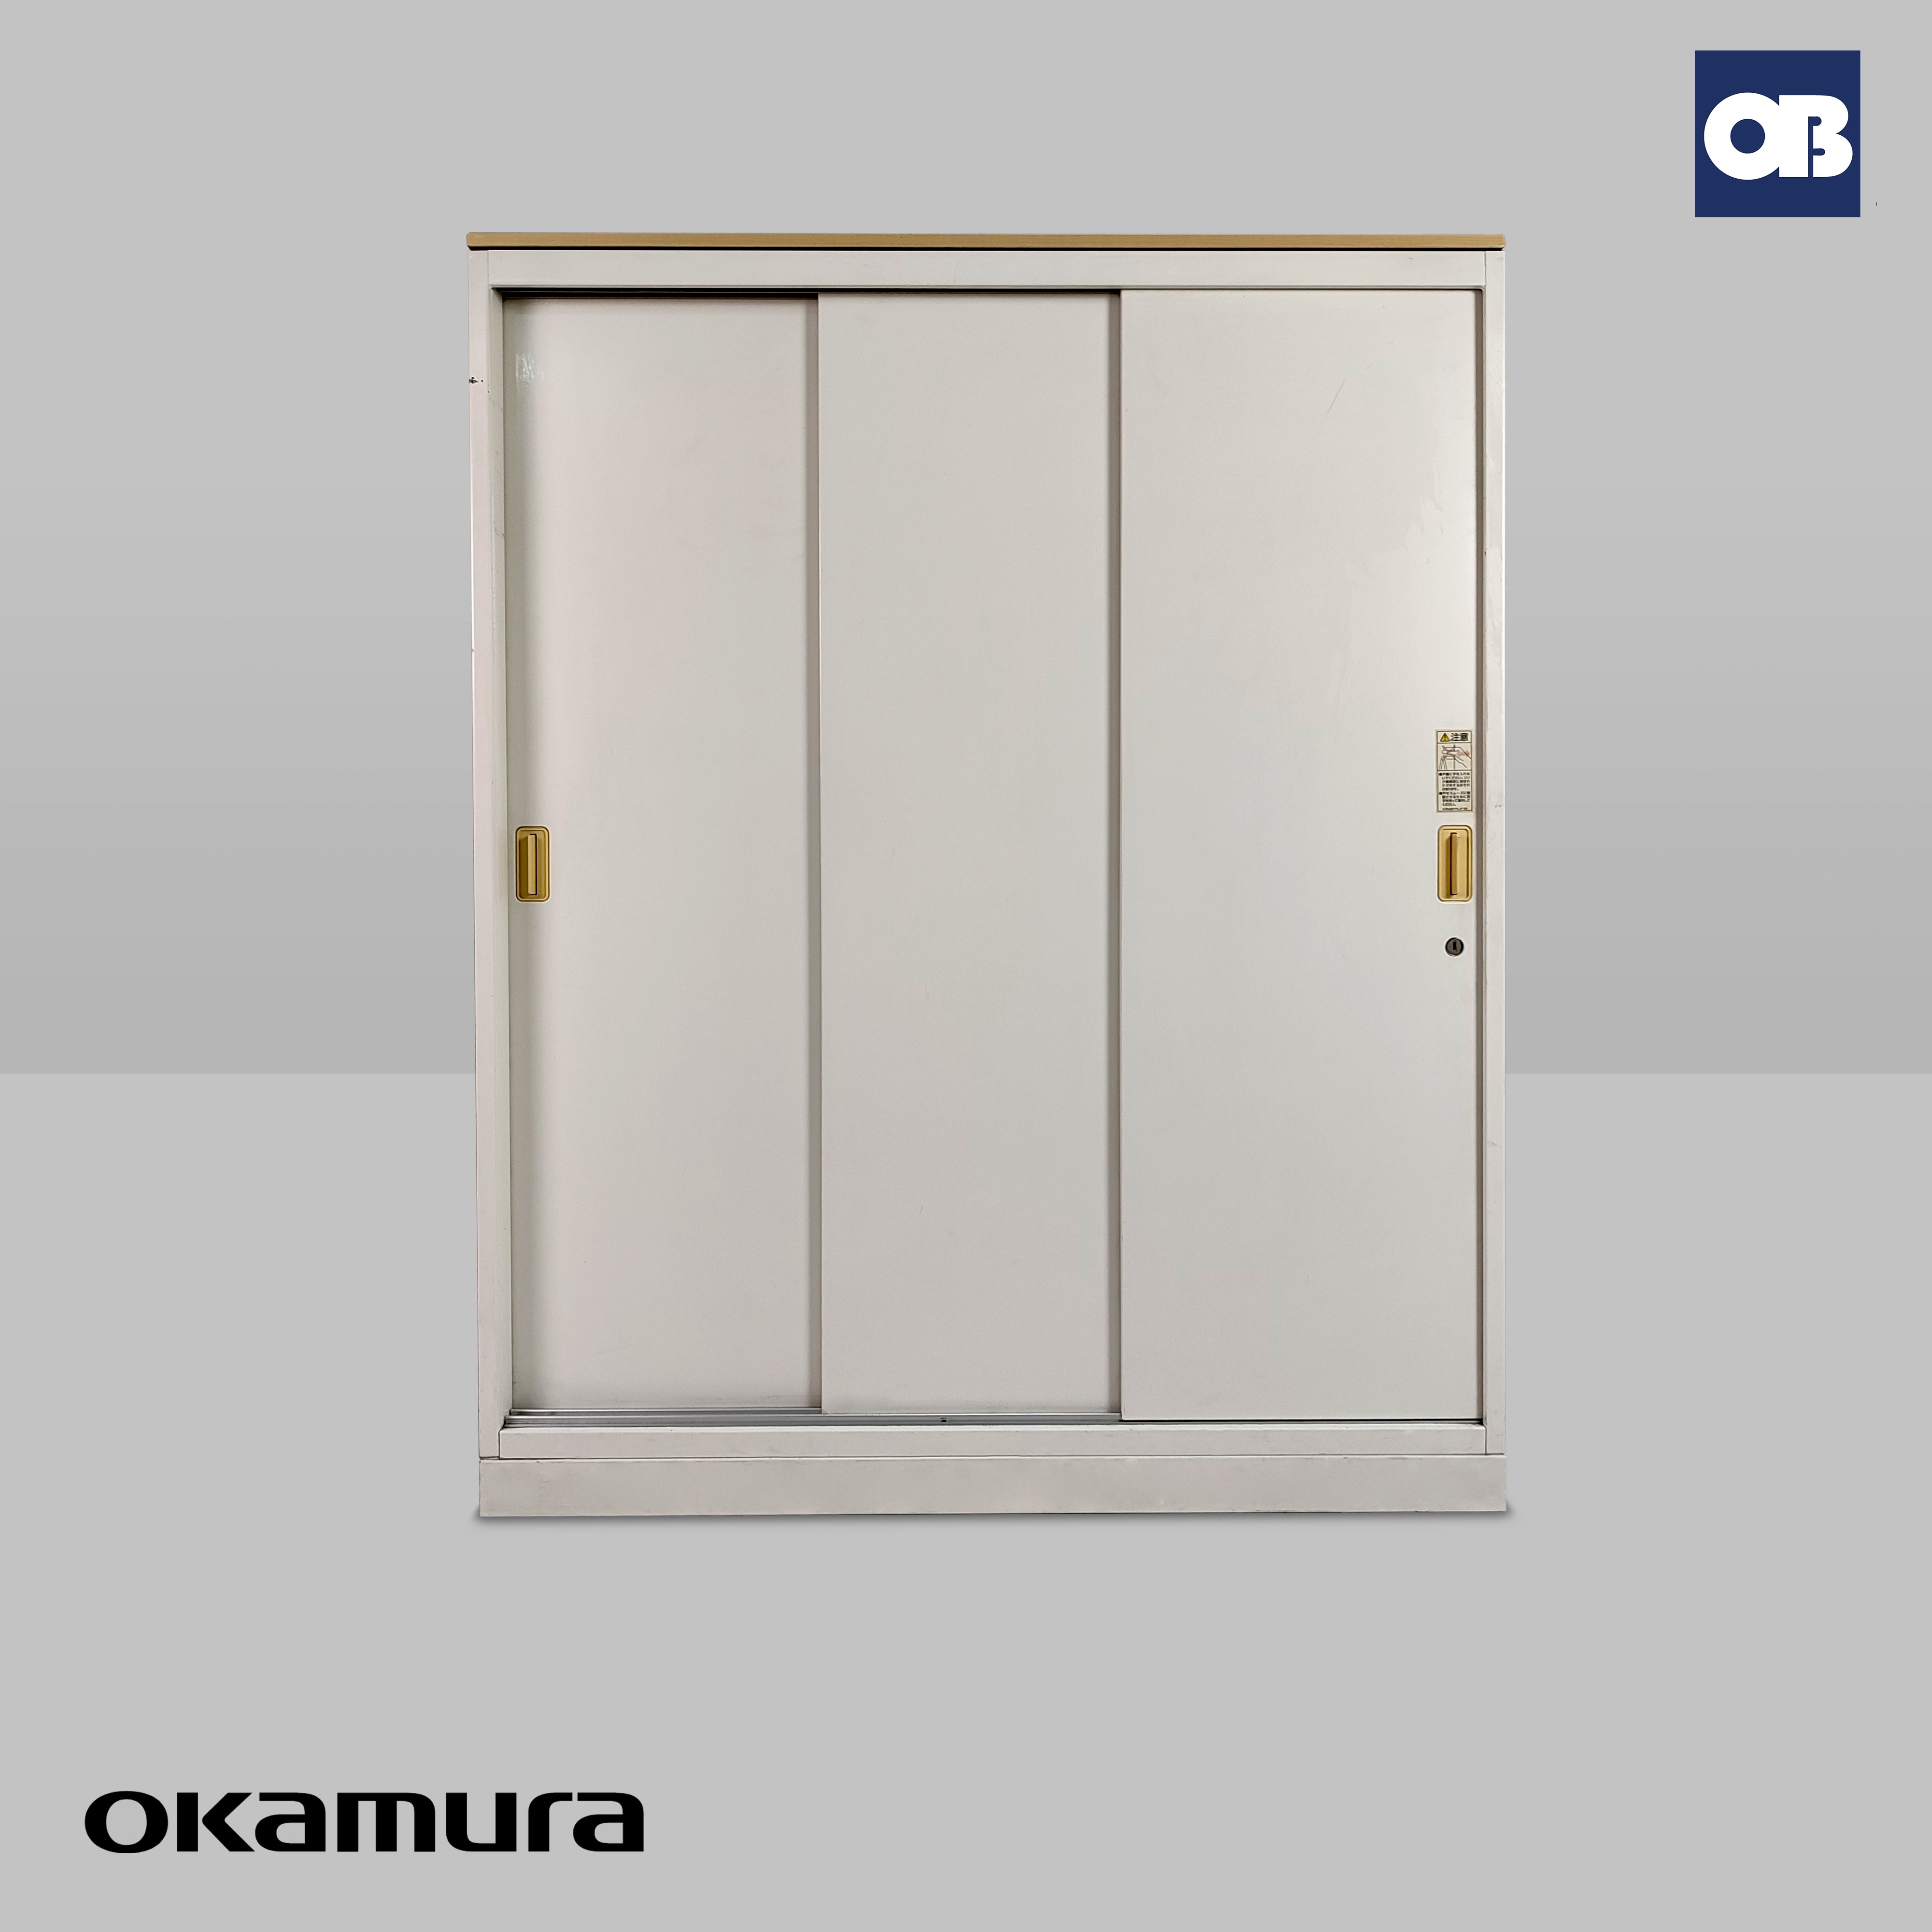 Okamura Sliding Door Cabinet